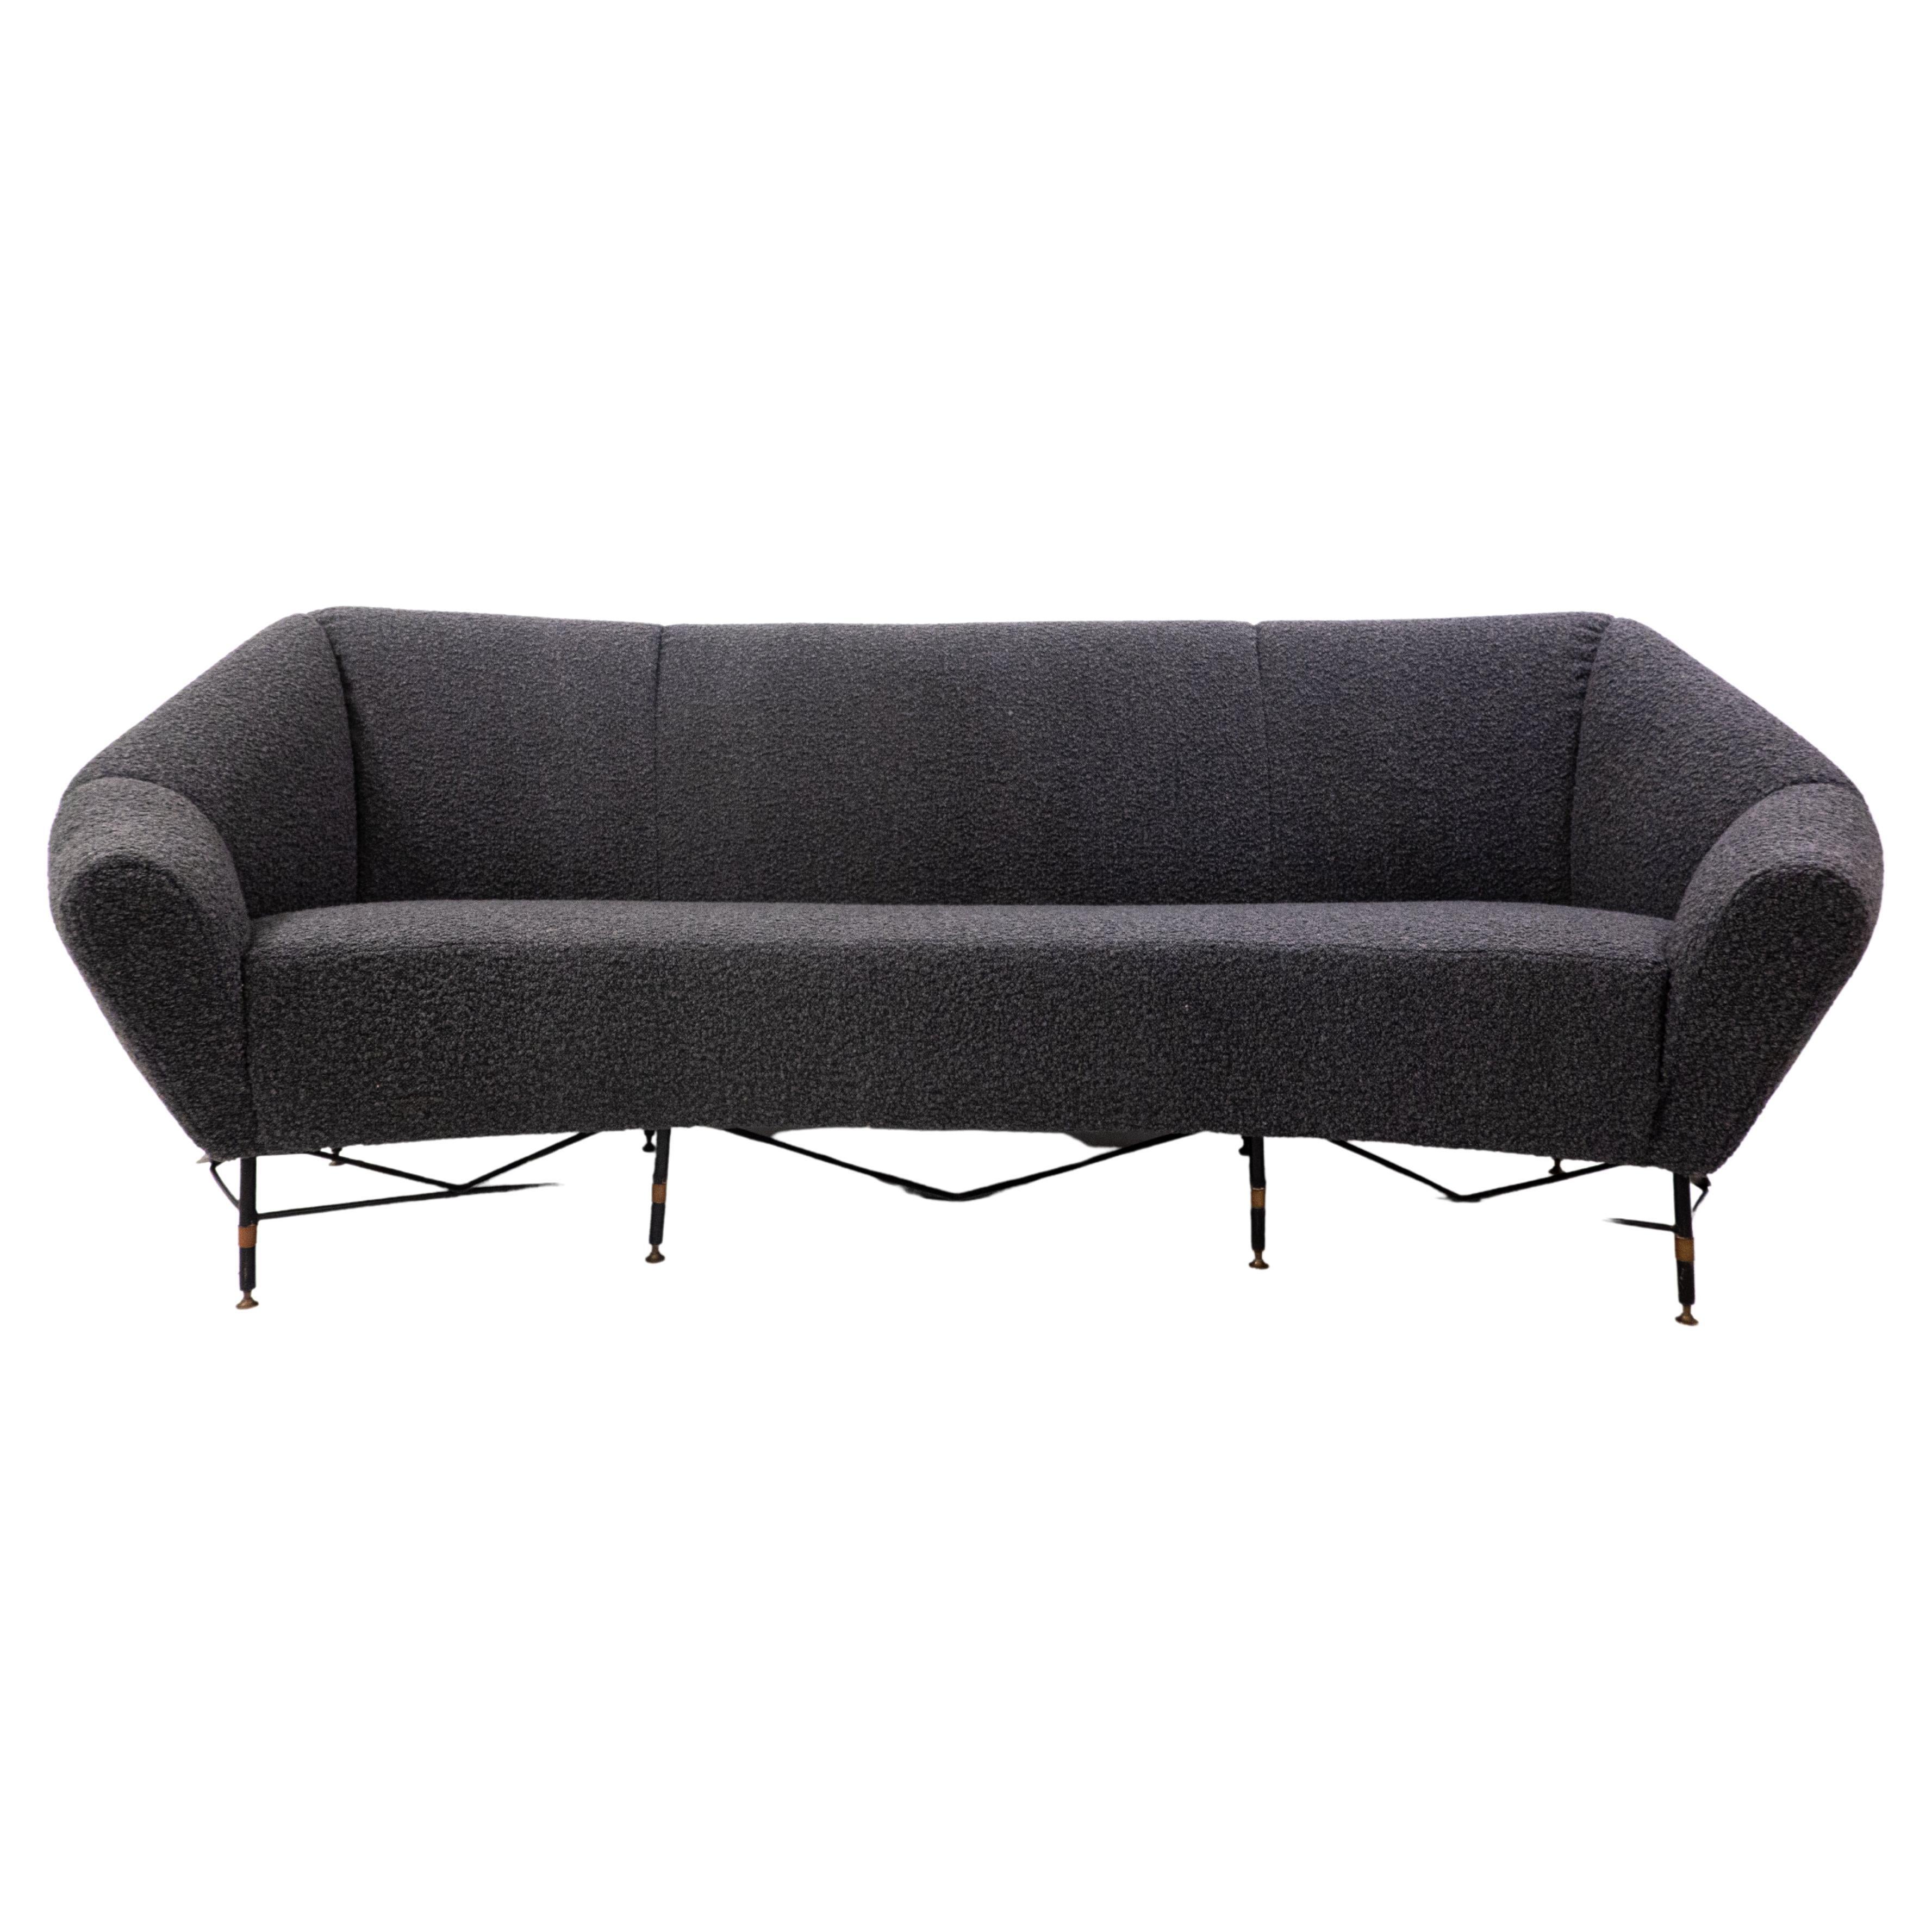 Mid-Century Modern Italian Sofa, 1950s, New Upholstery Black Bouclette For Sale